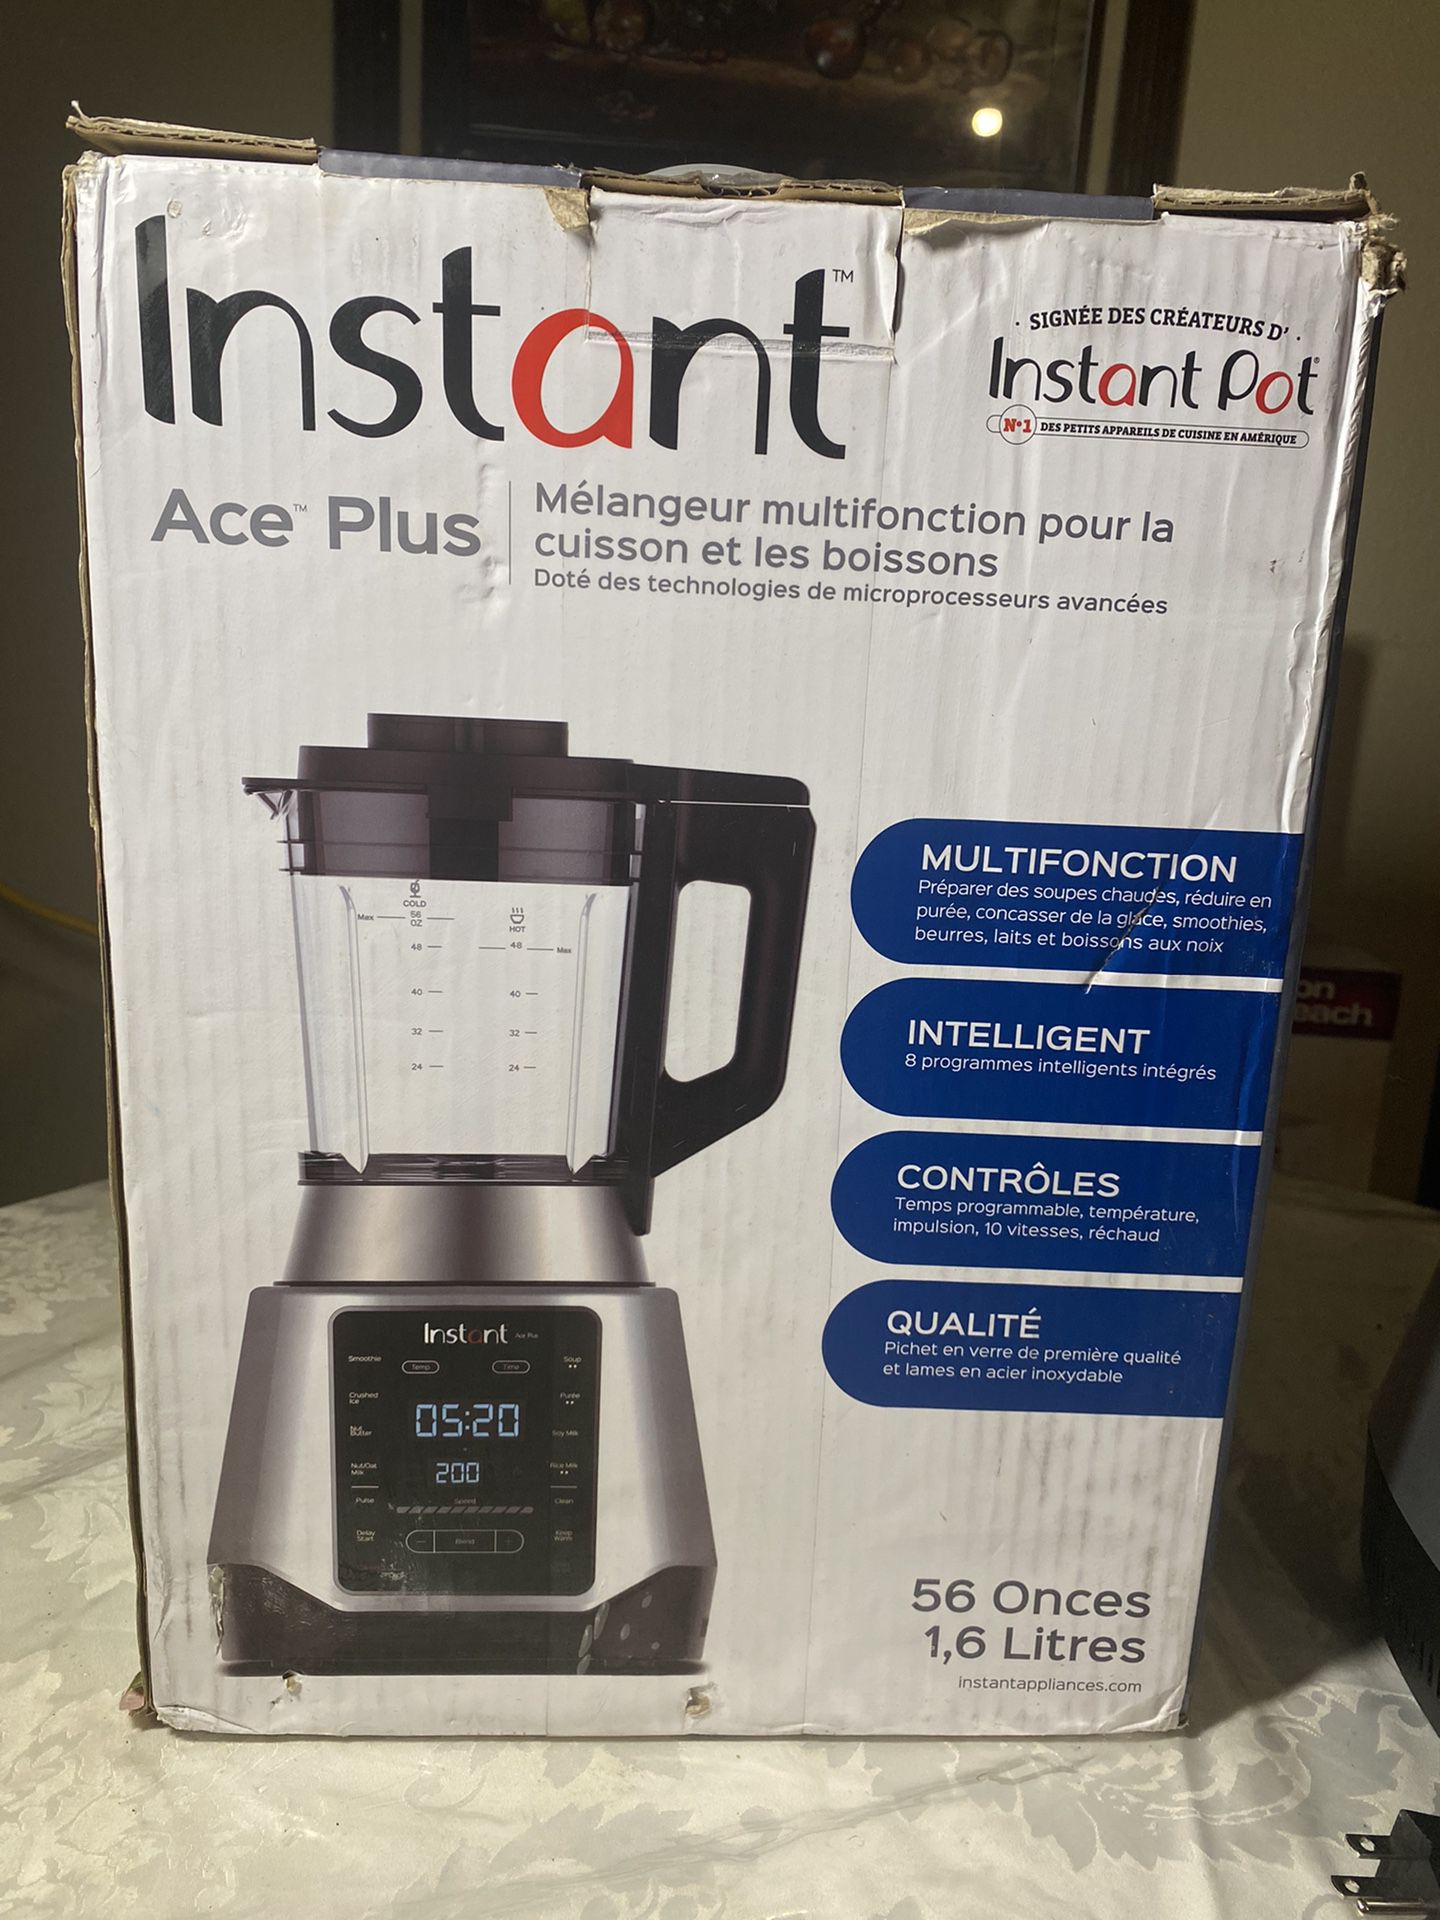 Instant Pot Ace Plus blender on sale: Save $60